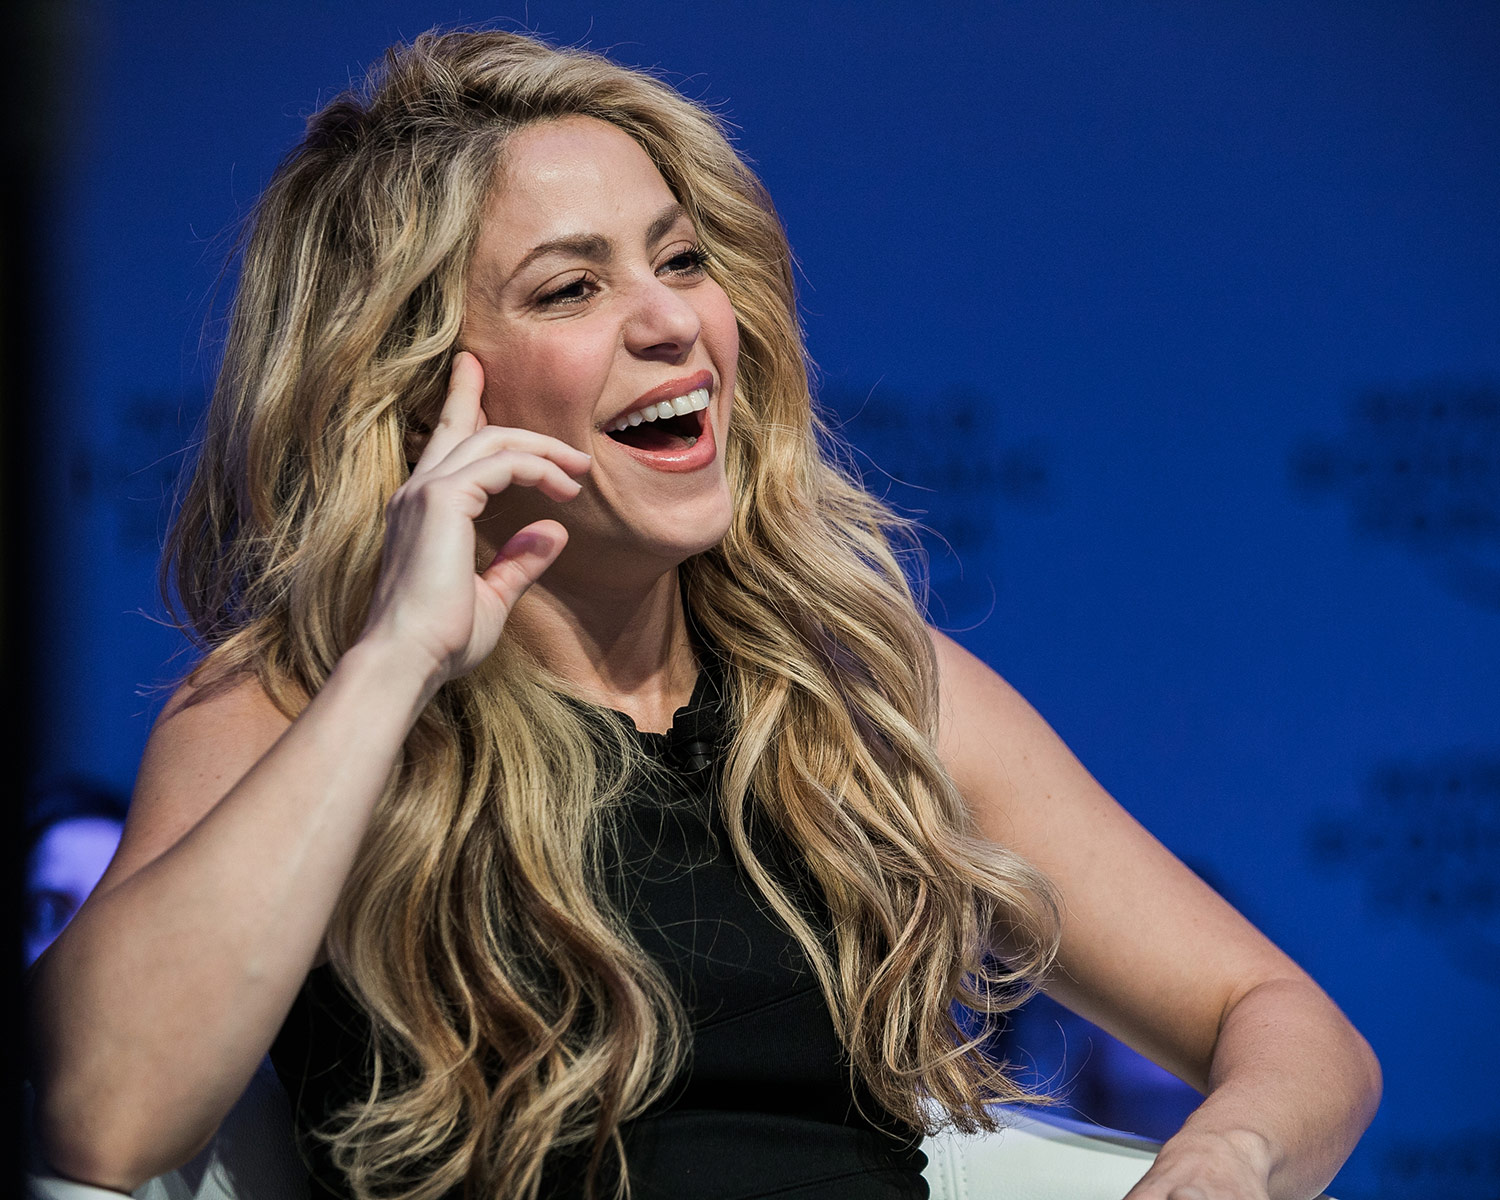 Artista pop Shakira, mencionada en los Pandora Papers